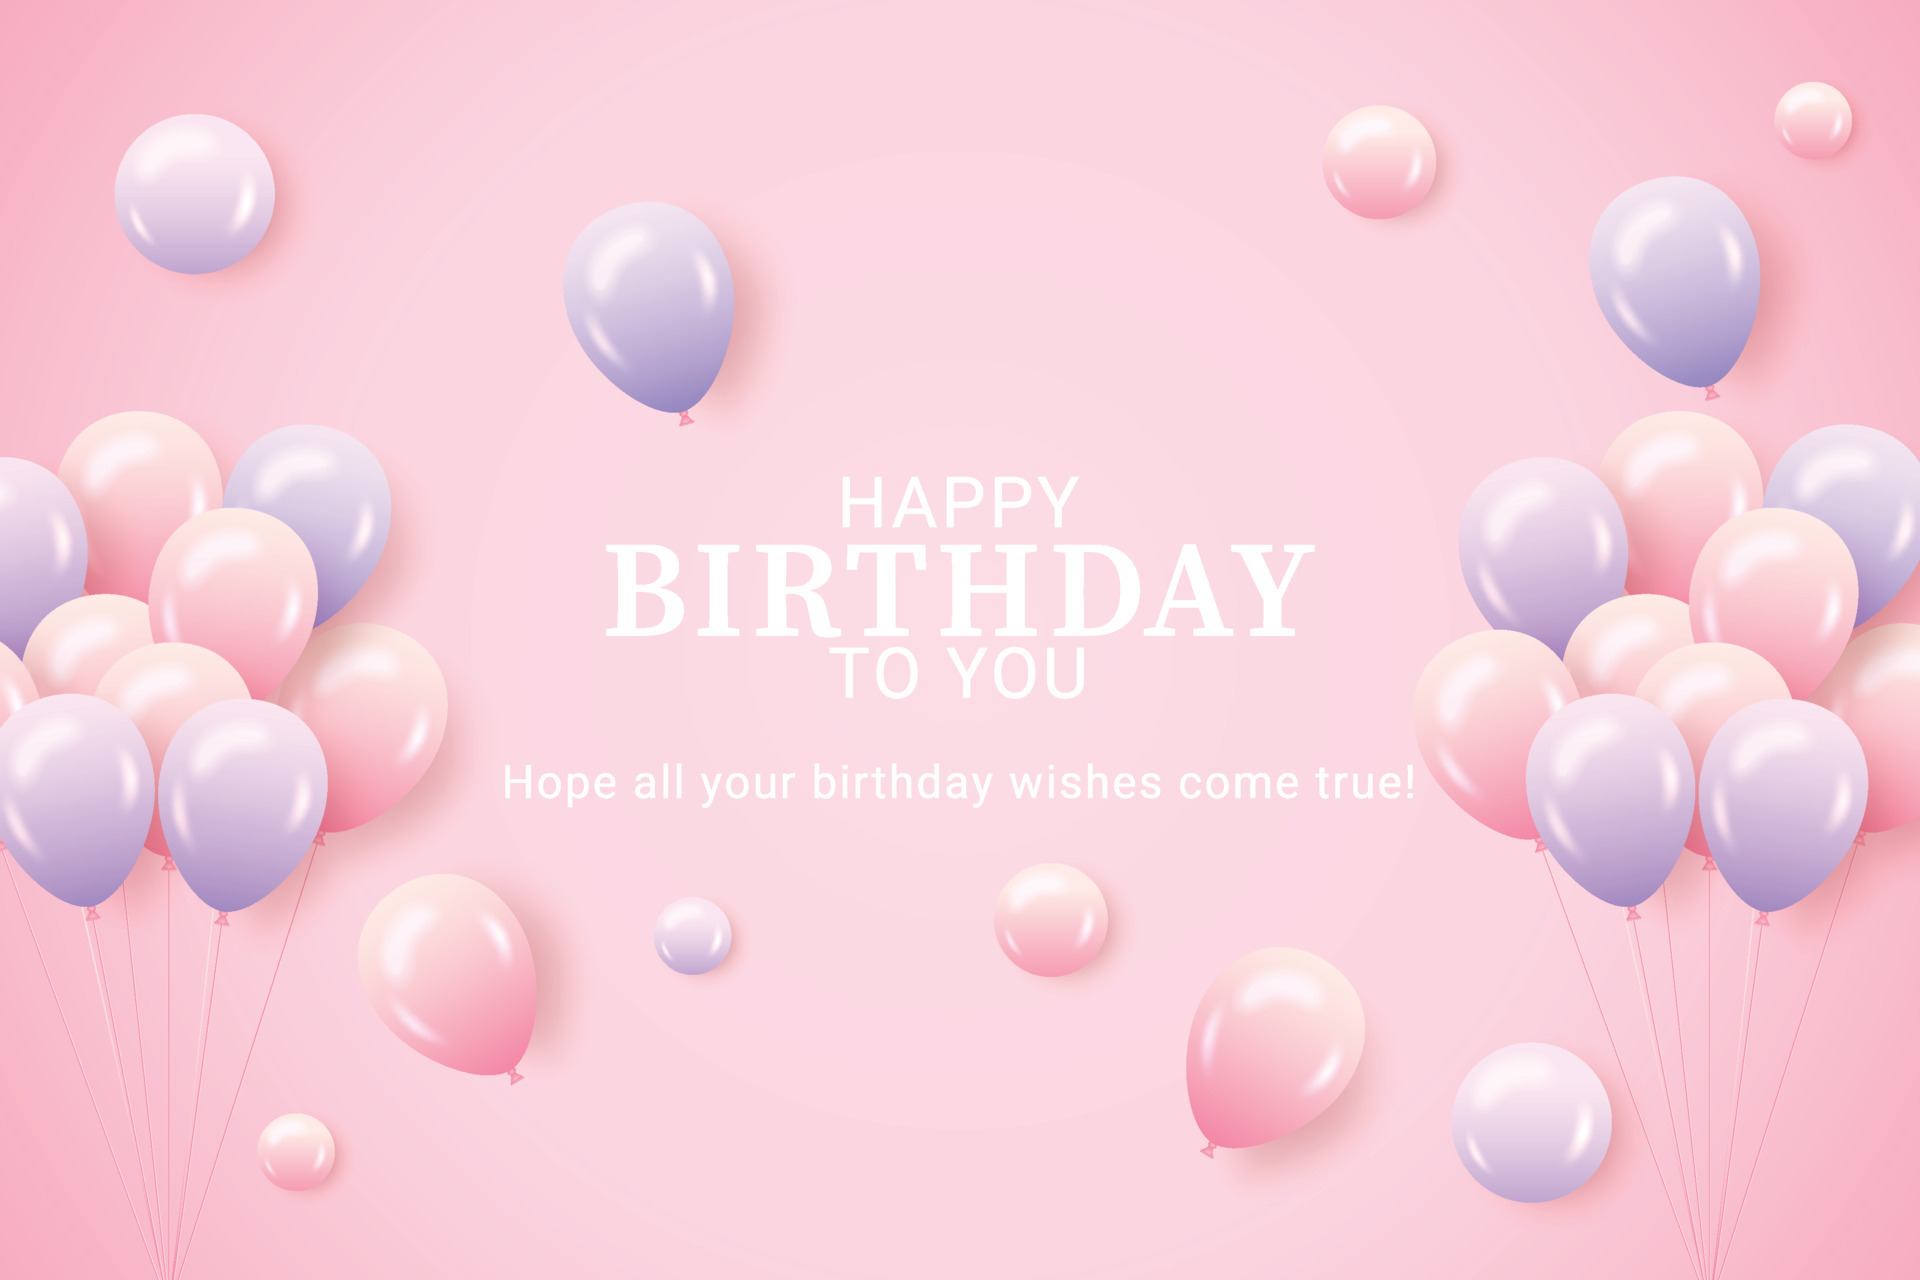 Với quả bóng hồng tím kèm phông nền sinh nhật màu hồng tím, bạn sẽ tạo được không gian sinh nhật đẹp mắt cho bữa tiệc của bạn. Hãy xem hình ảnh liên quan để có được một cái nhìn sơ lược về cách sử dụng quả bóng hồng tím và phông nền sinh nhật màu hồng tím để trang trí cho bữa tiệc sinh nhật của bạn.